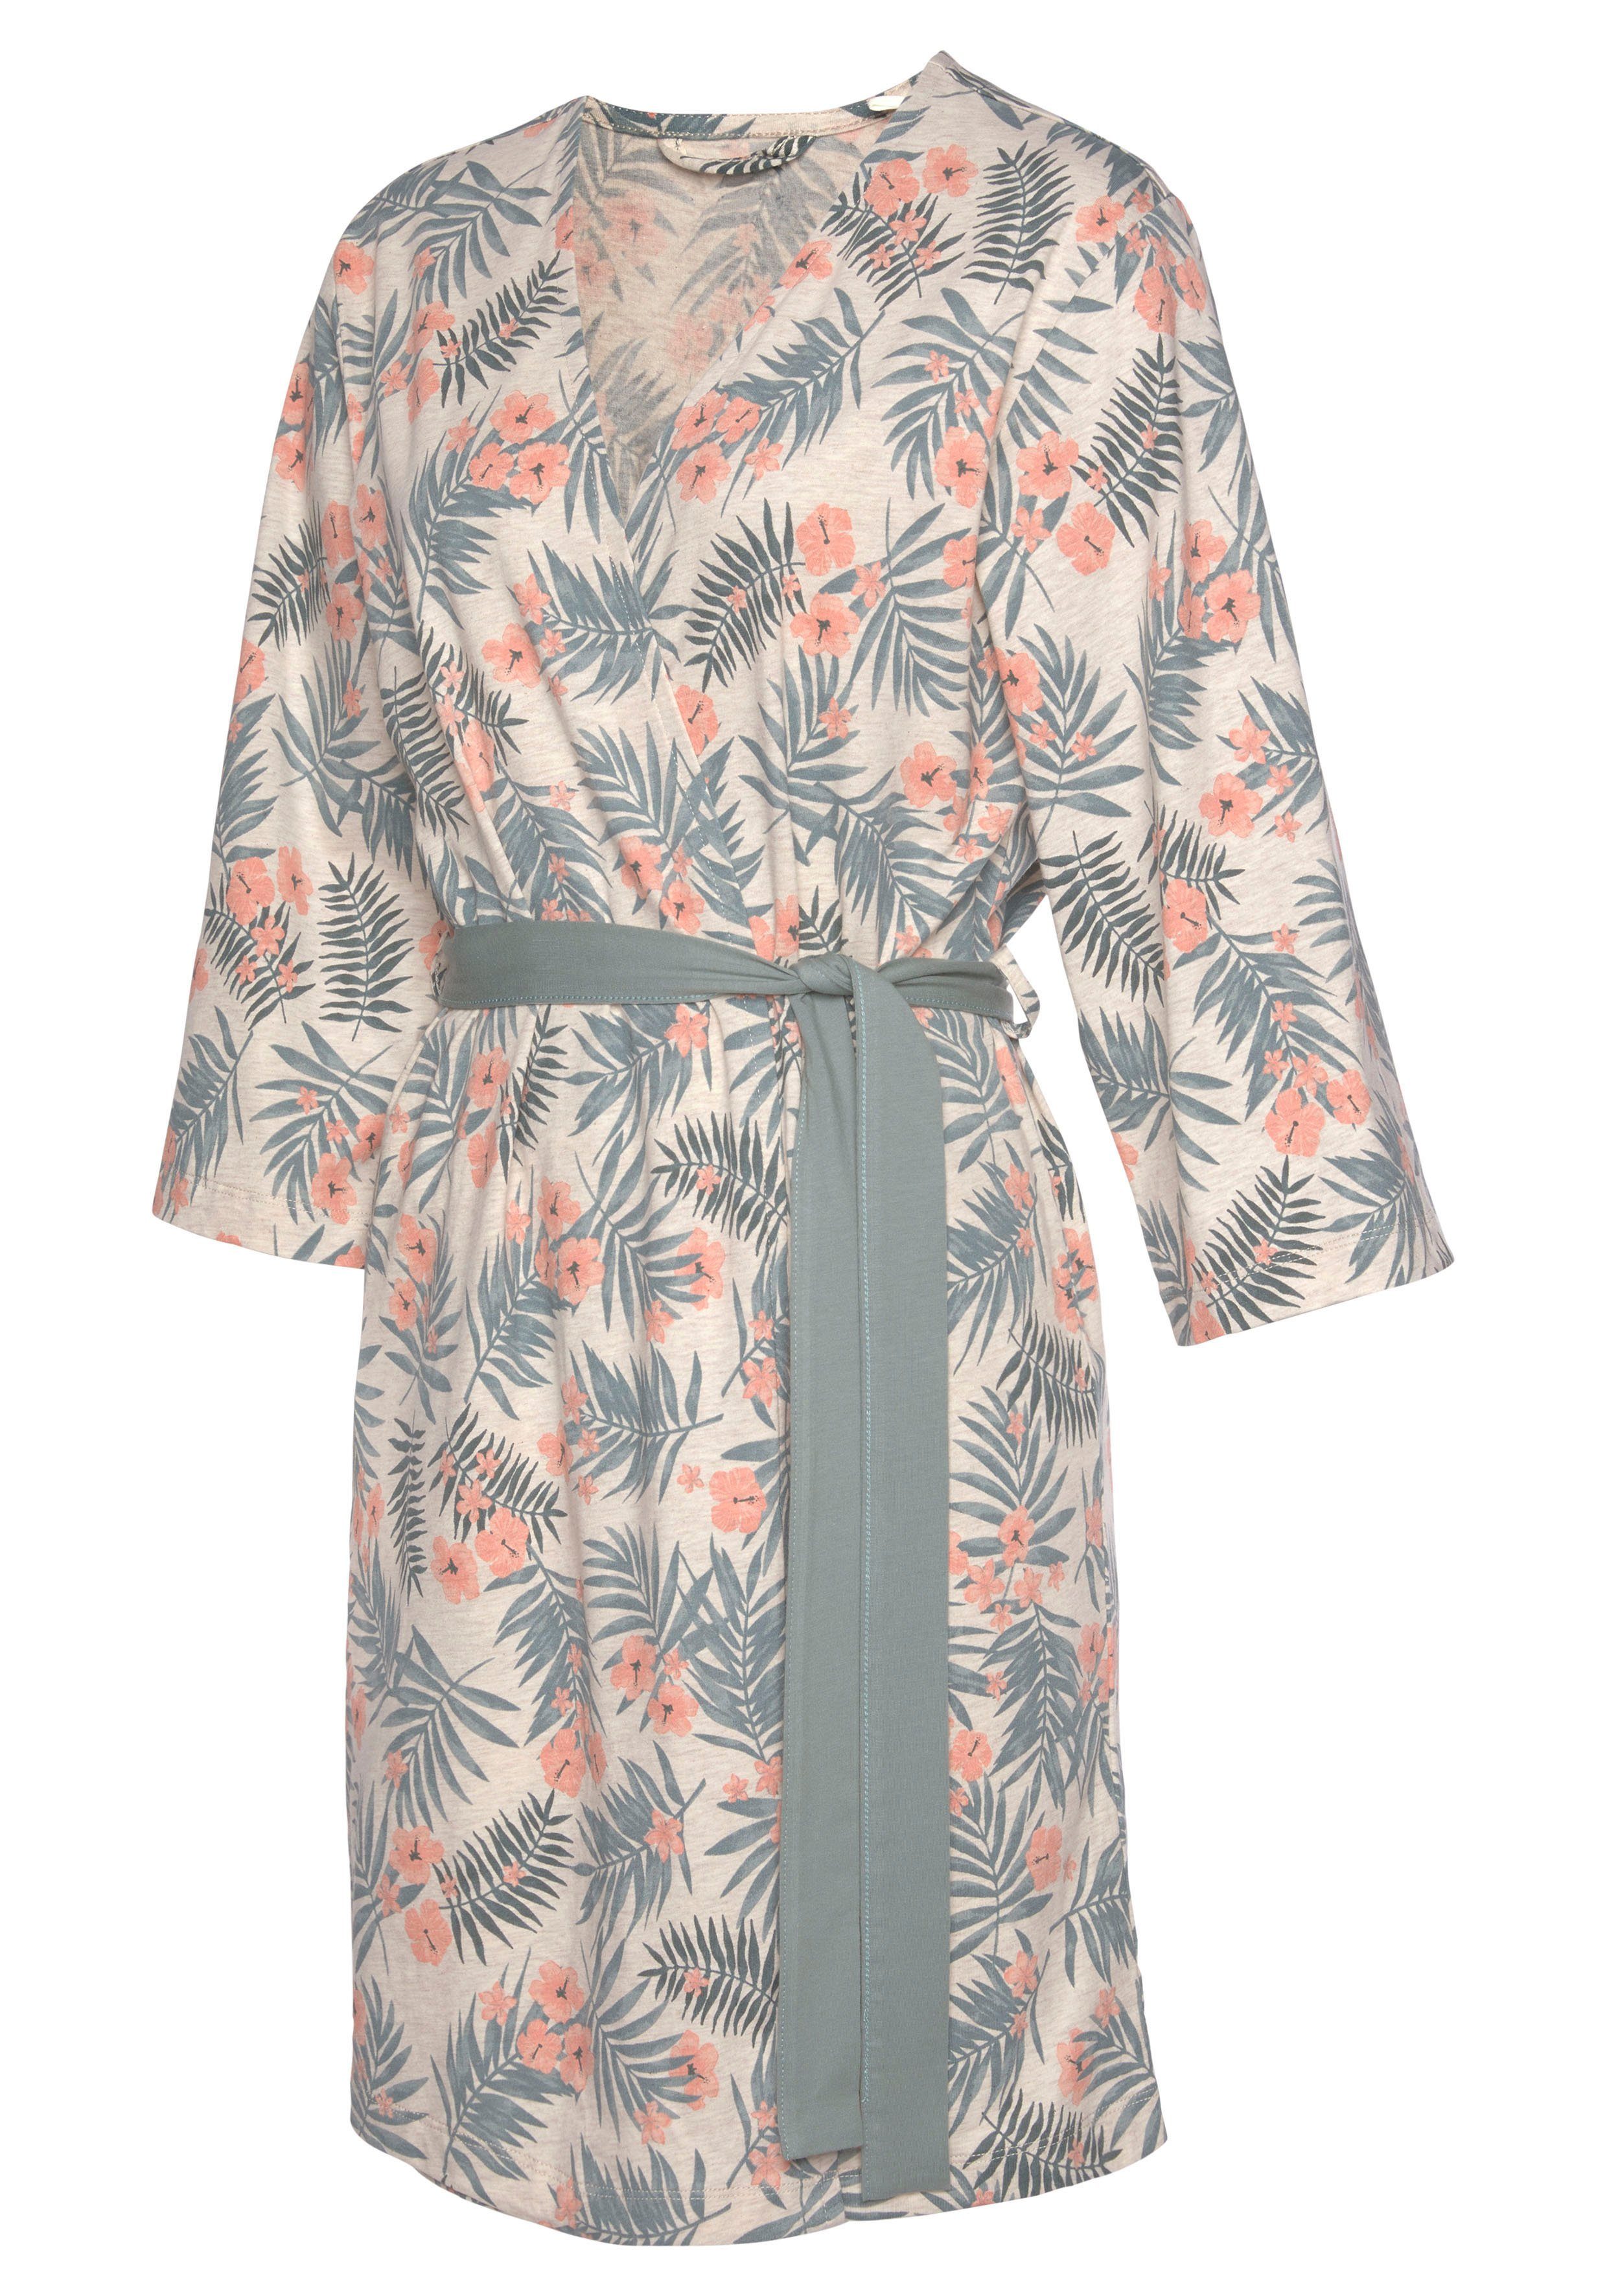 LASCANA Kimono, Kurzform, Baumwolle, Gürtel, Allover-Druck uni sand-grün in und